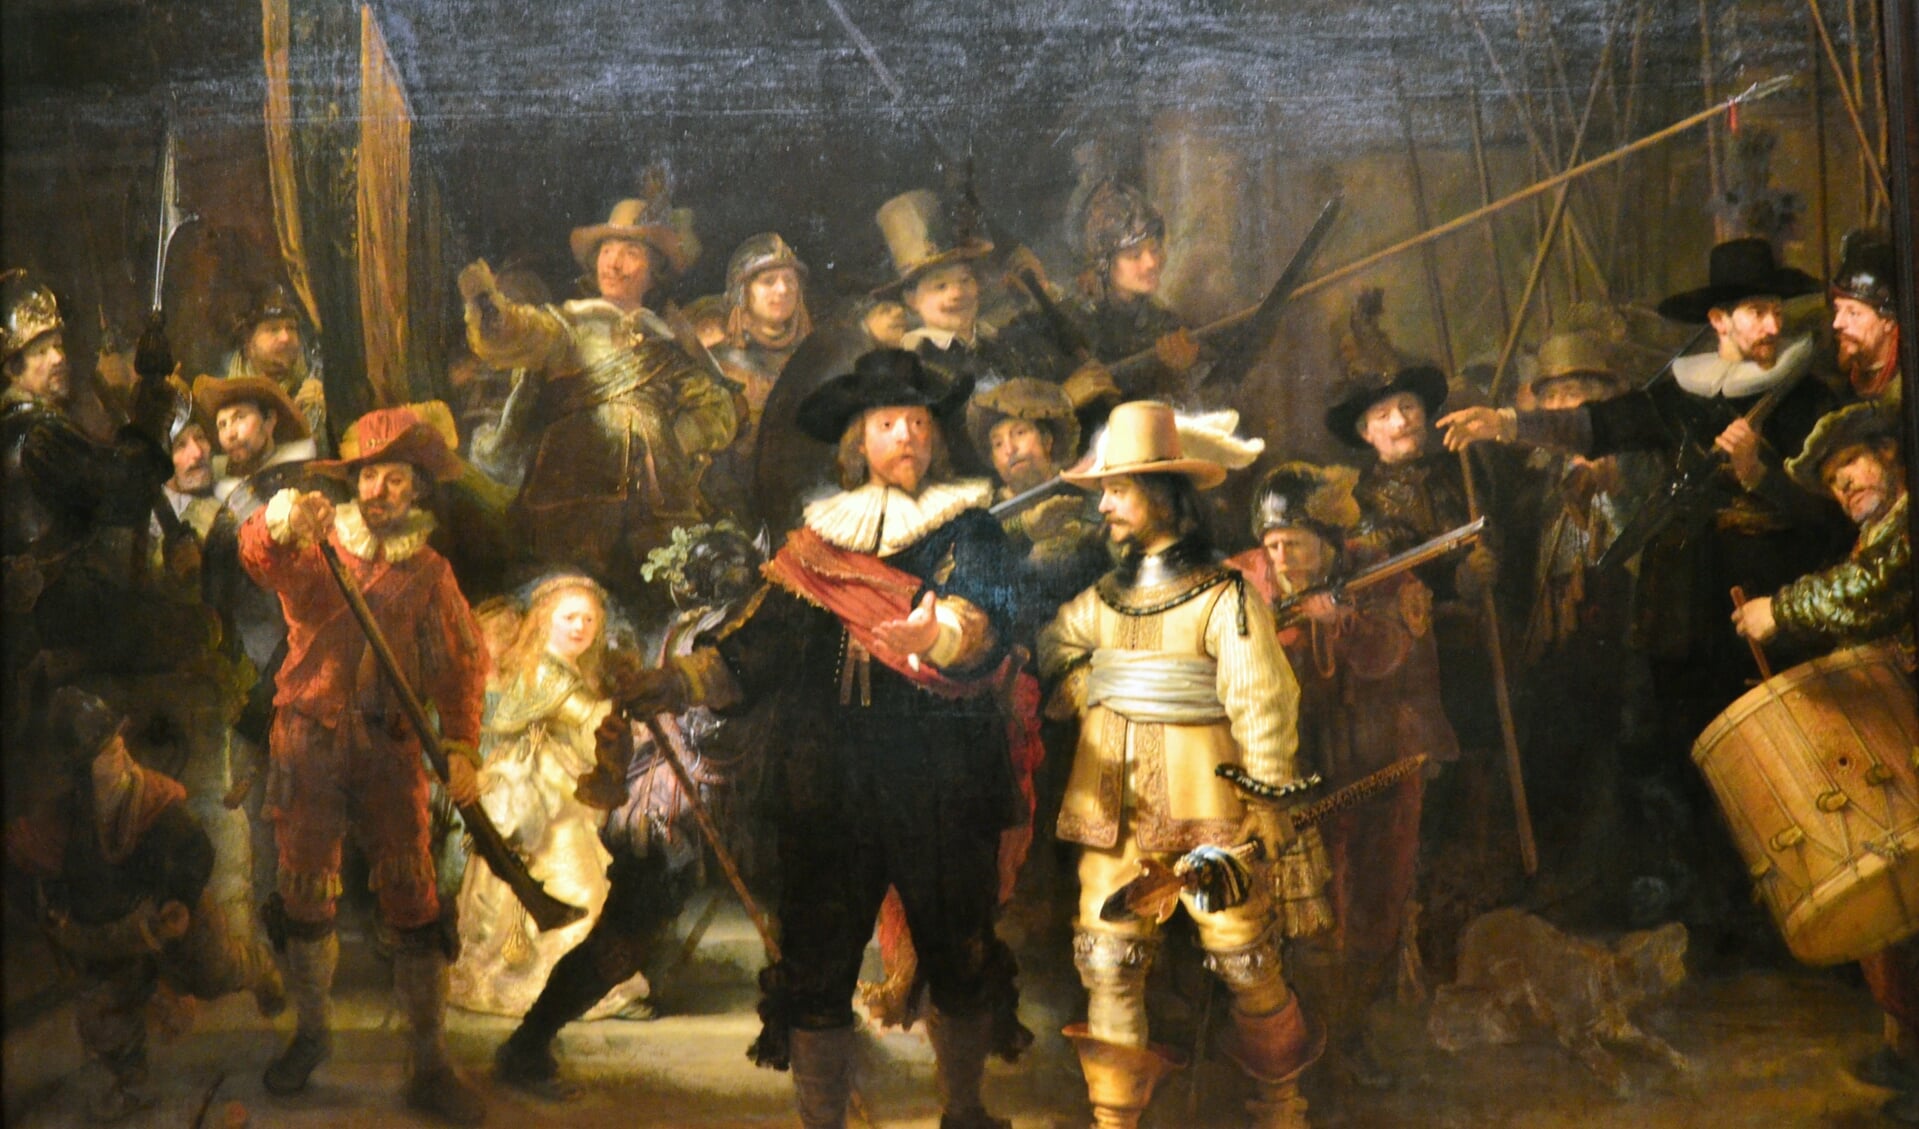 De Nachtwacht van Rembrandt van Rijn.